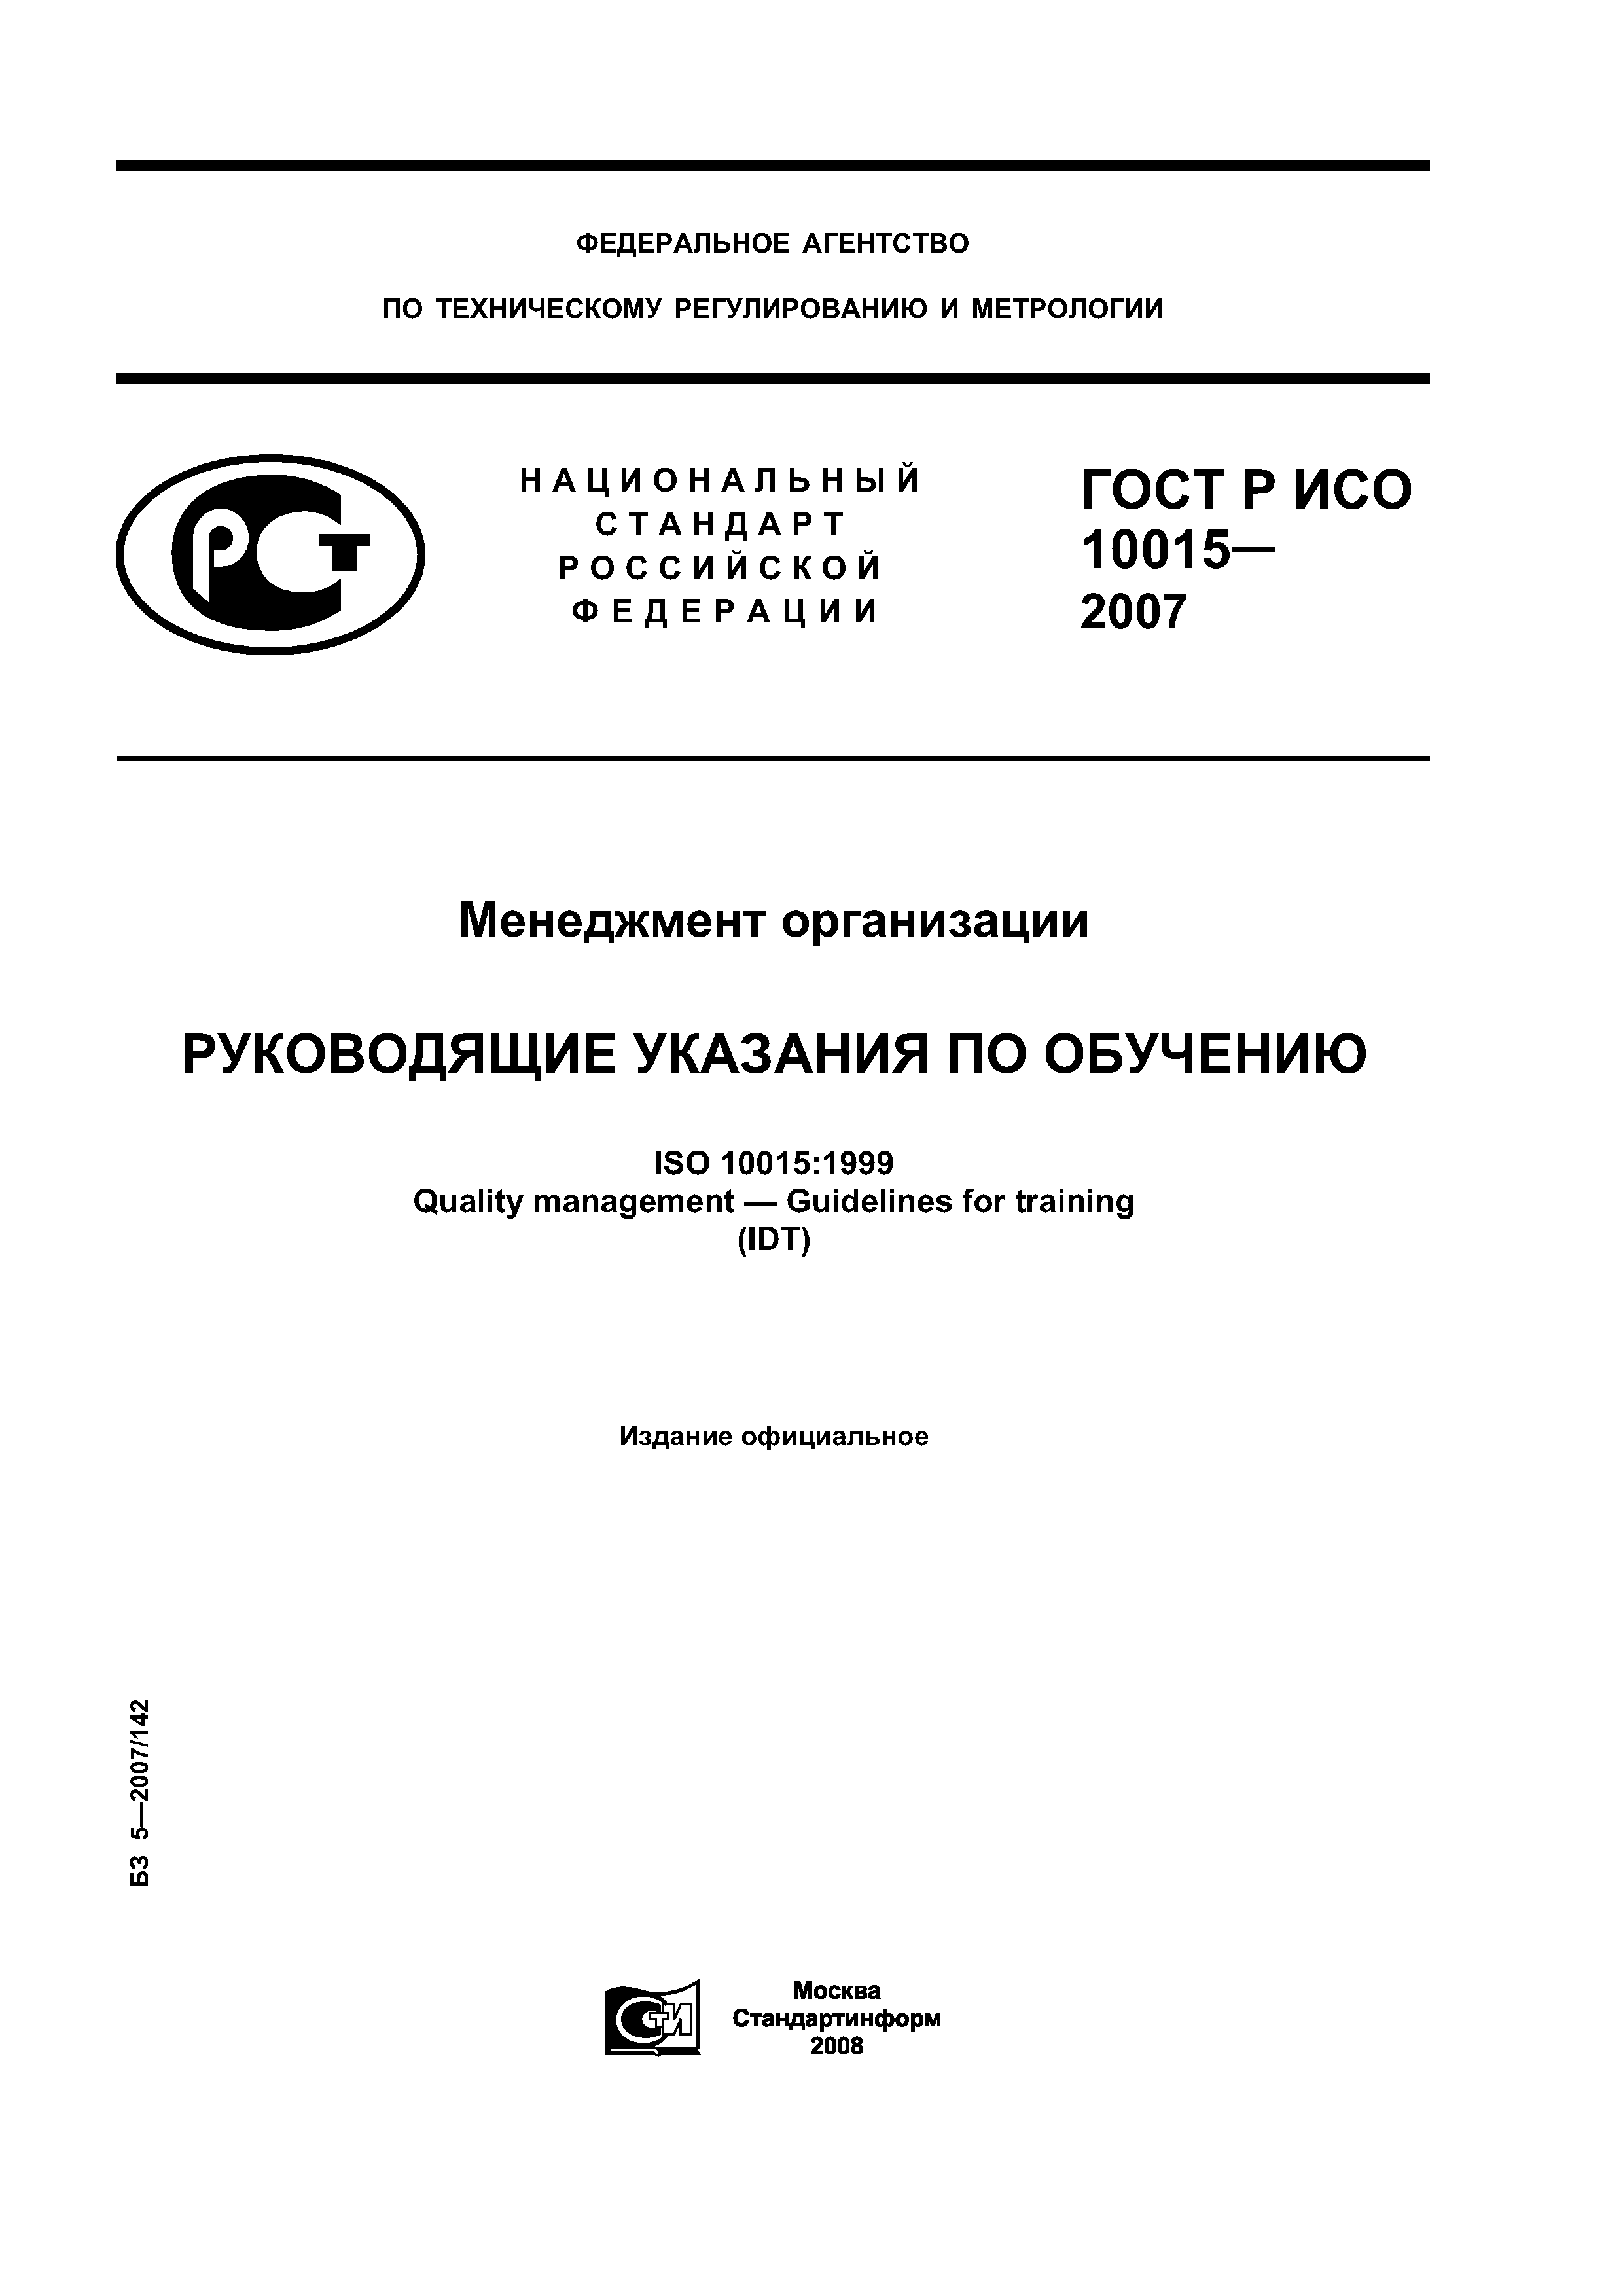 ГОСТ Р ИСО 10015-2007